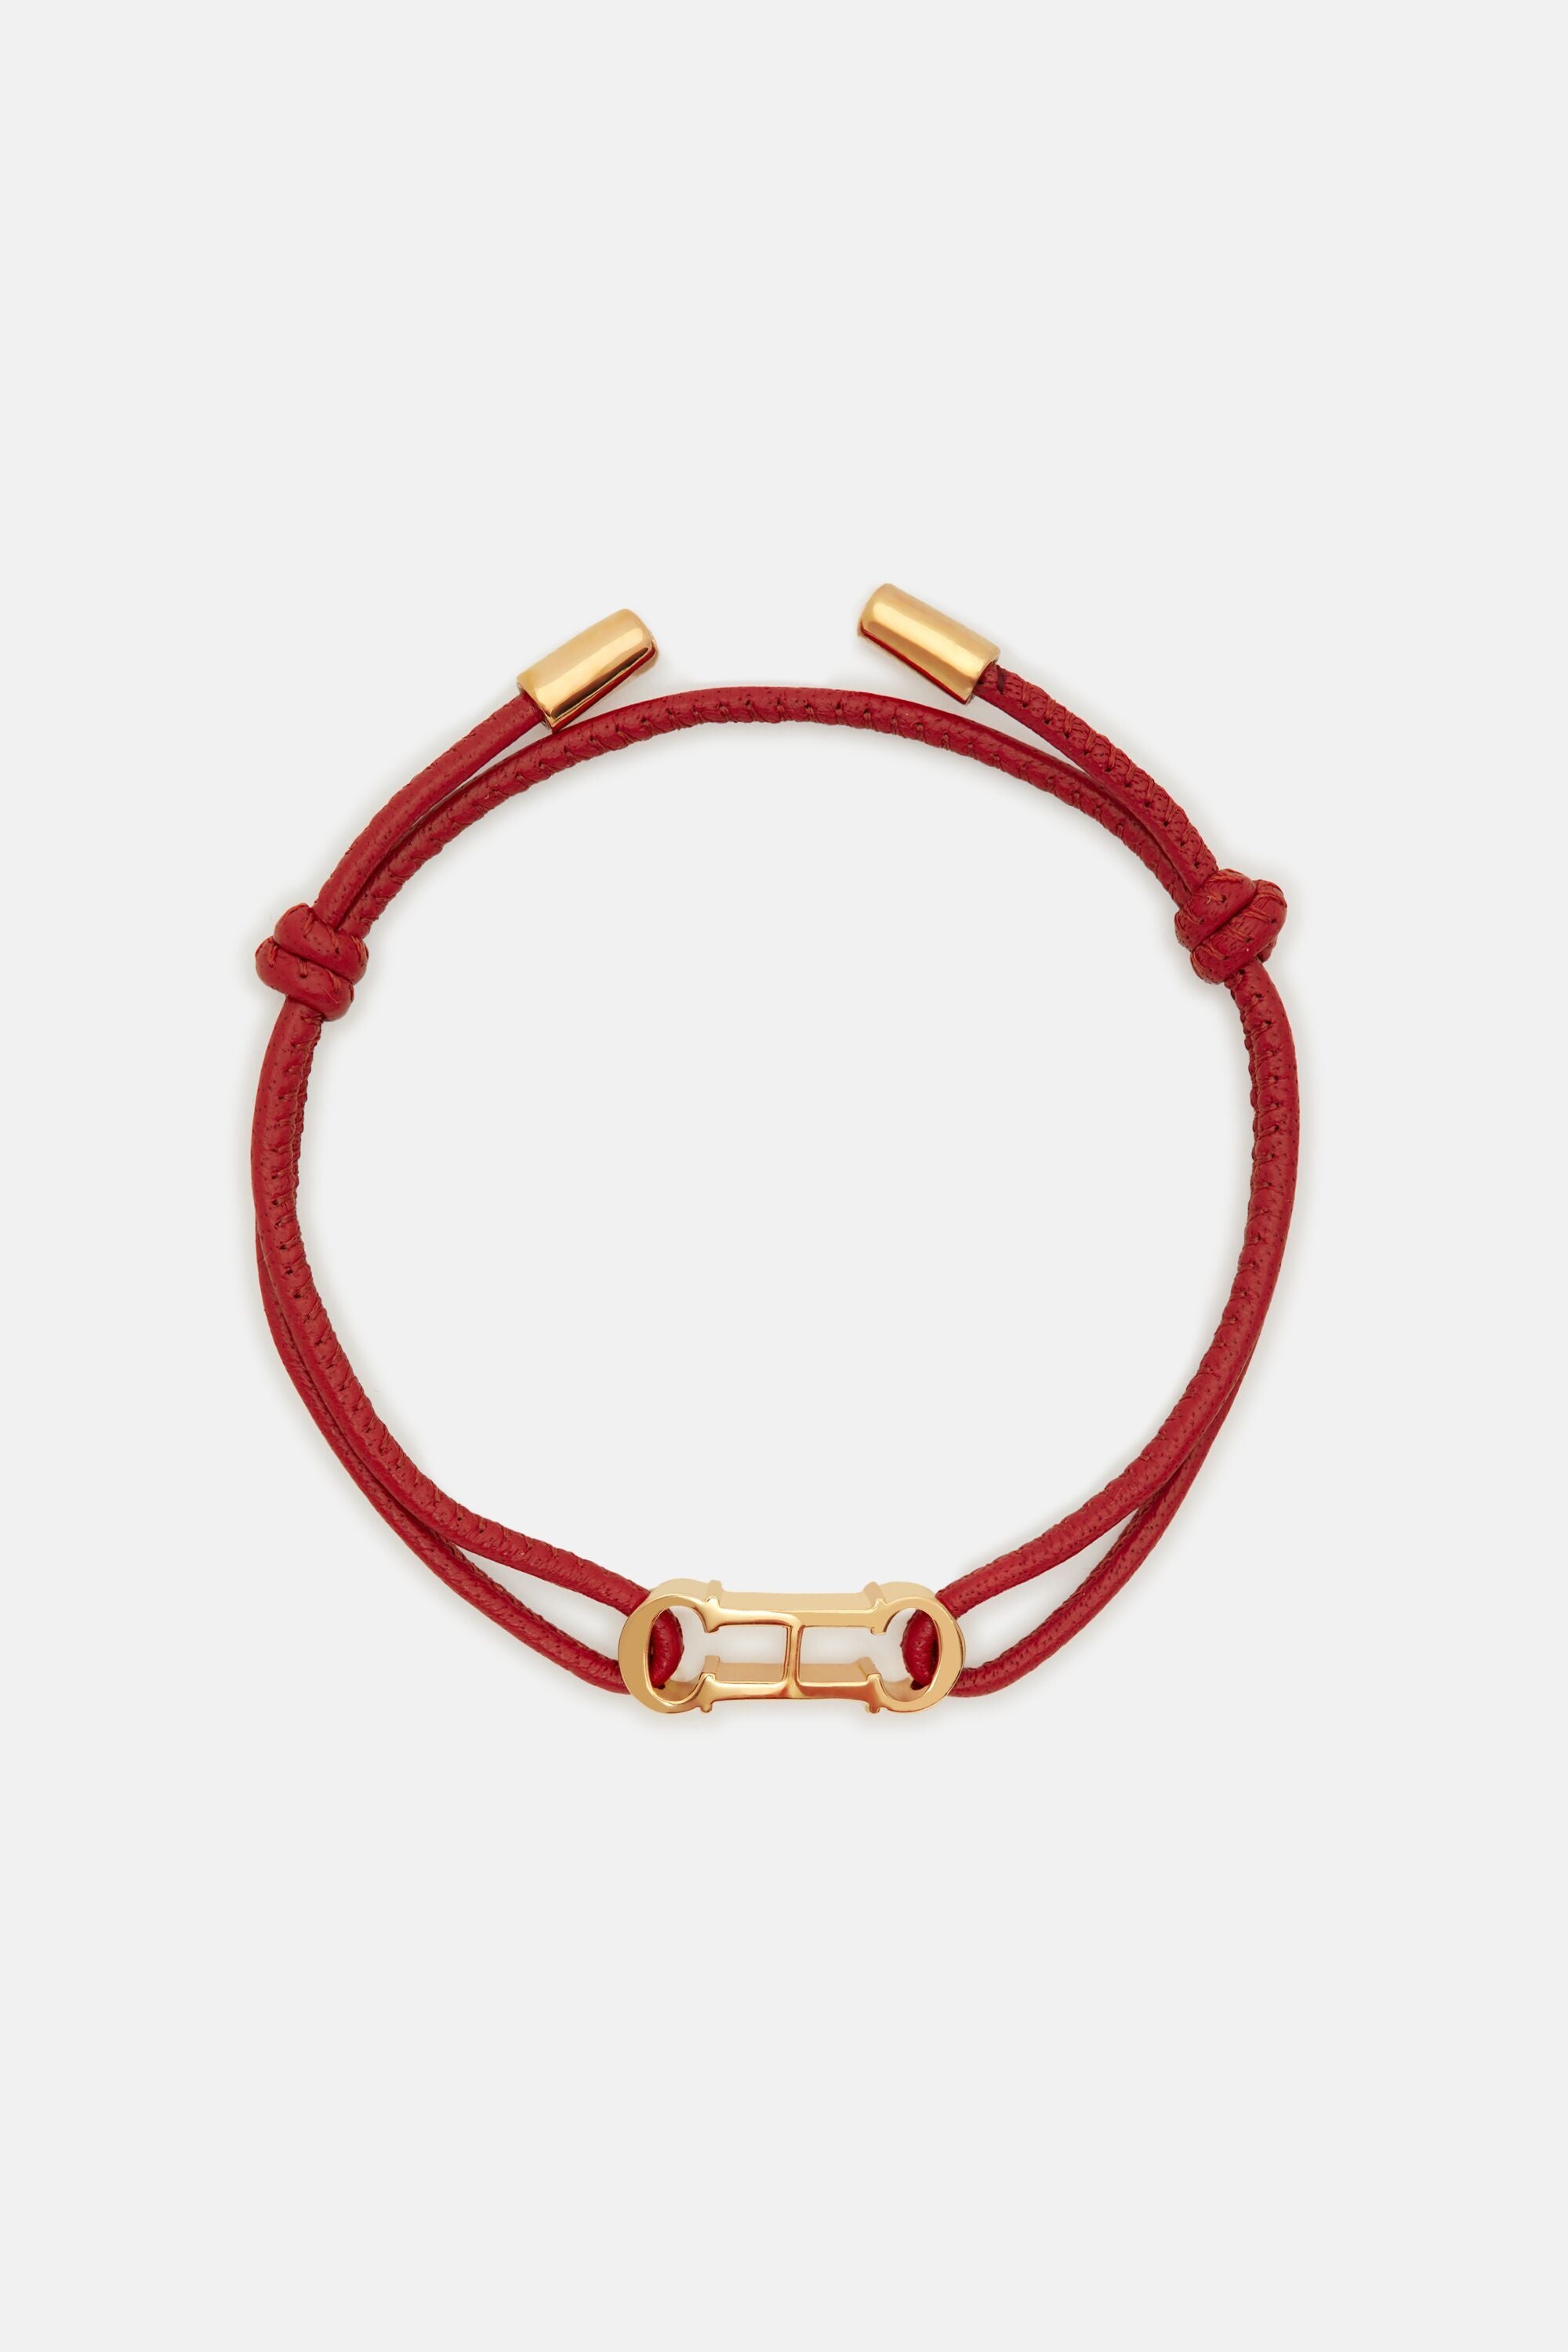 CAROLINA HERRERA Women's Bracelet/Wristband in Gold